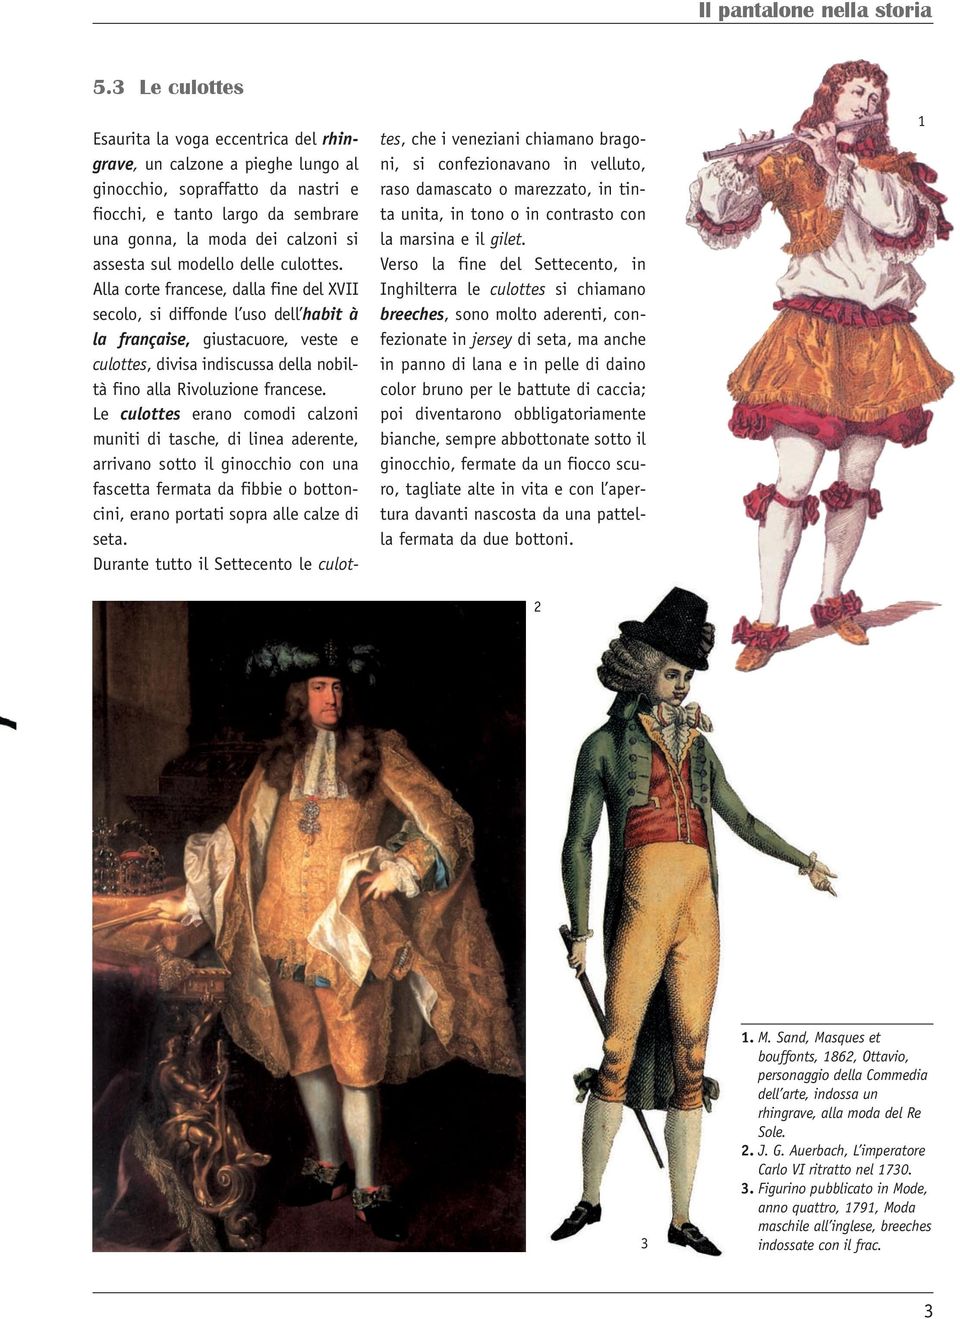 Alla corte francese, dalla fine del XVII secolo, si diffonde l uso dell habit à la française, giustacuore, veste e culottes, divisa indiscussa della nobiltà fino alla Rivoluzione francese.